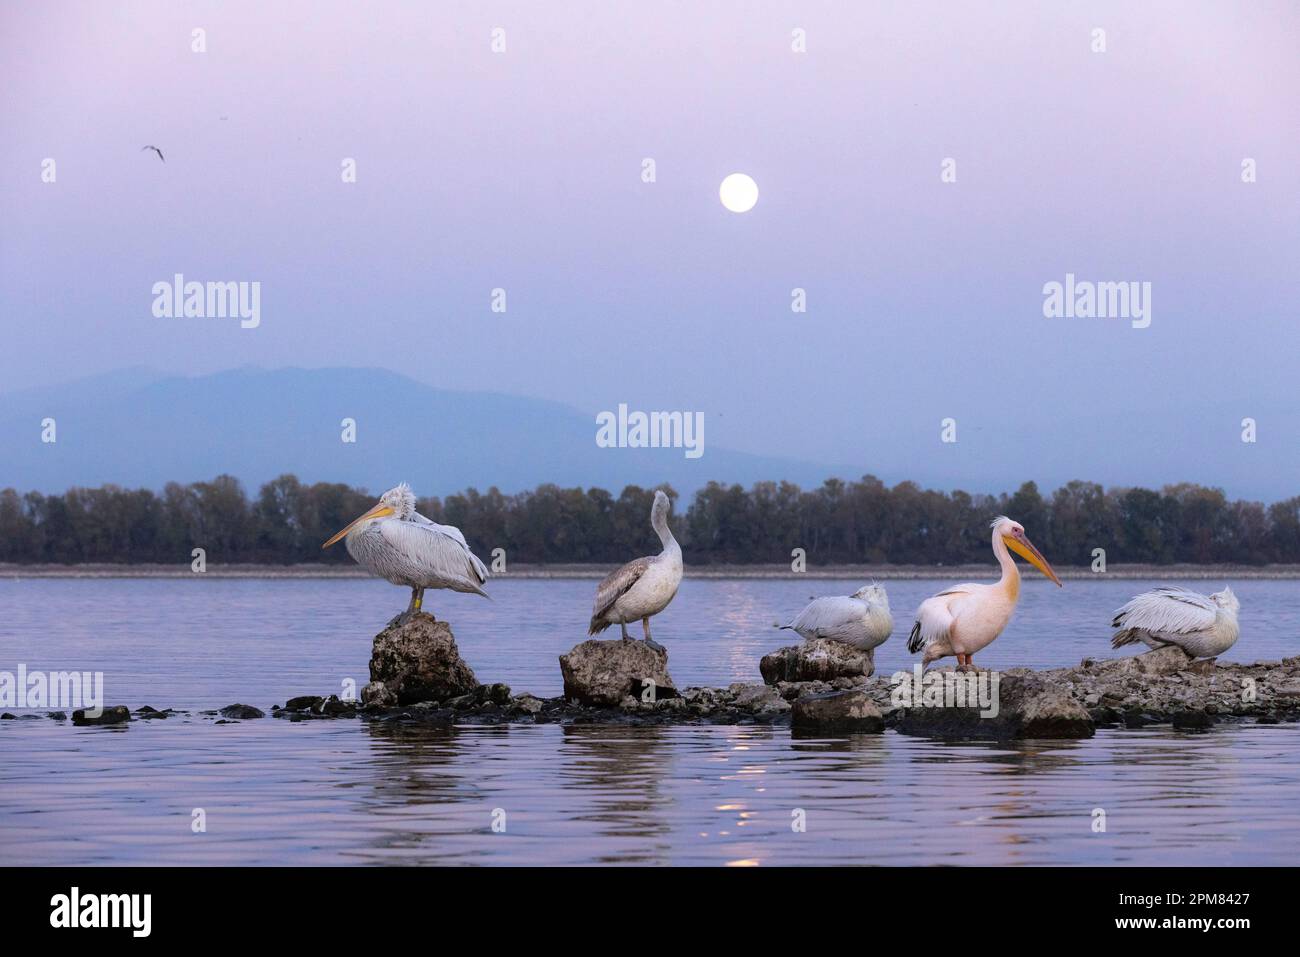 Greece, Macedonia, Lake Kerkini, Dalmatian Pelican (Pelecanus crispus) and white pelican (Pelecanus onocrotalus) Stock Photo